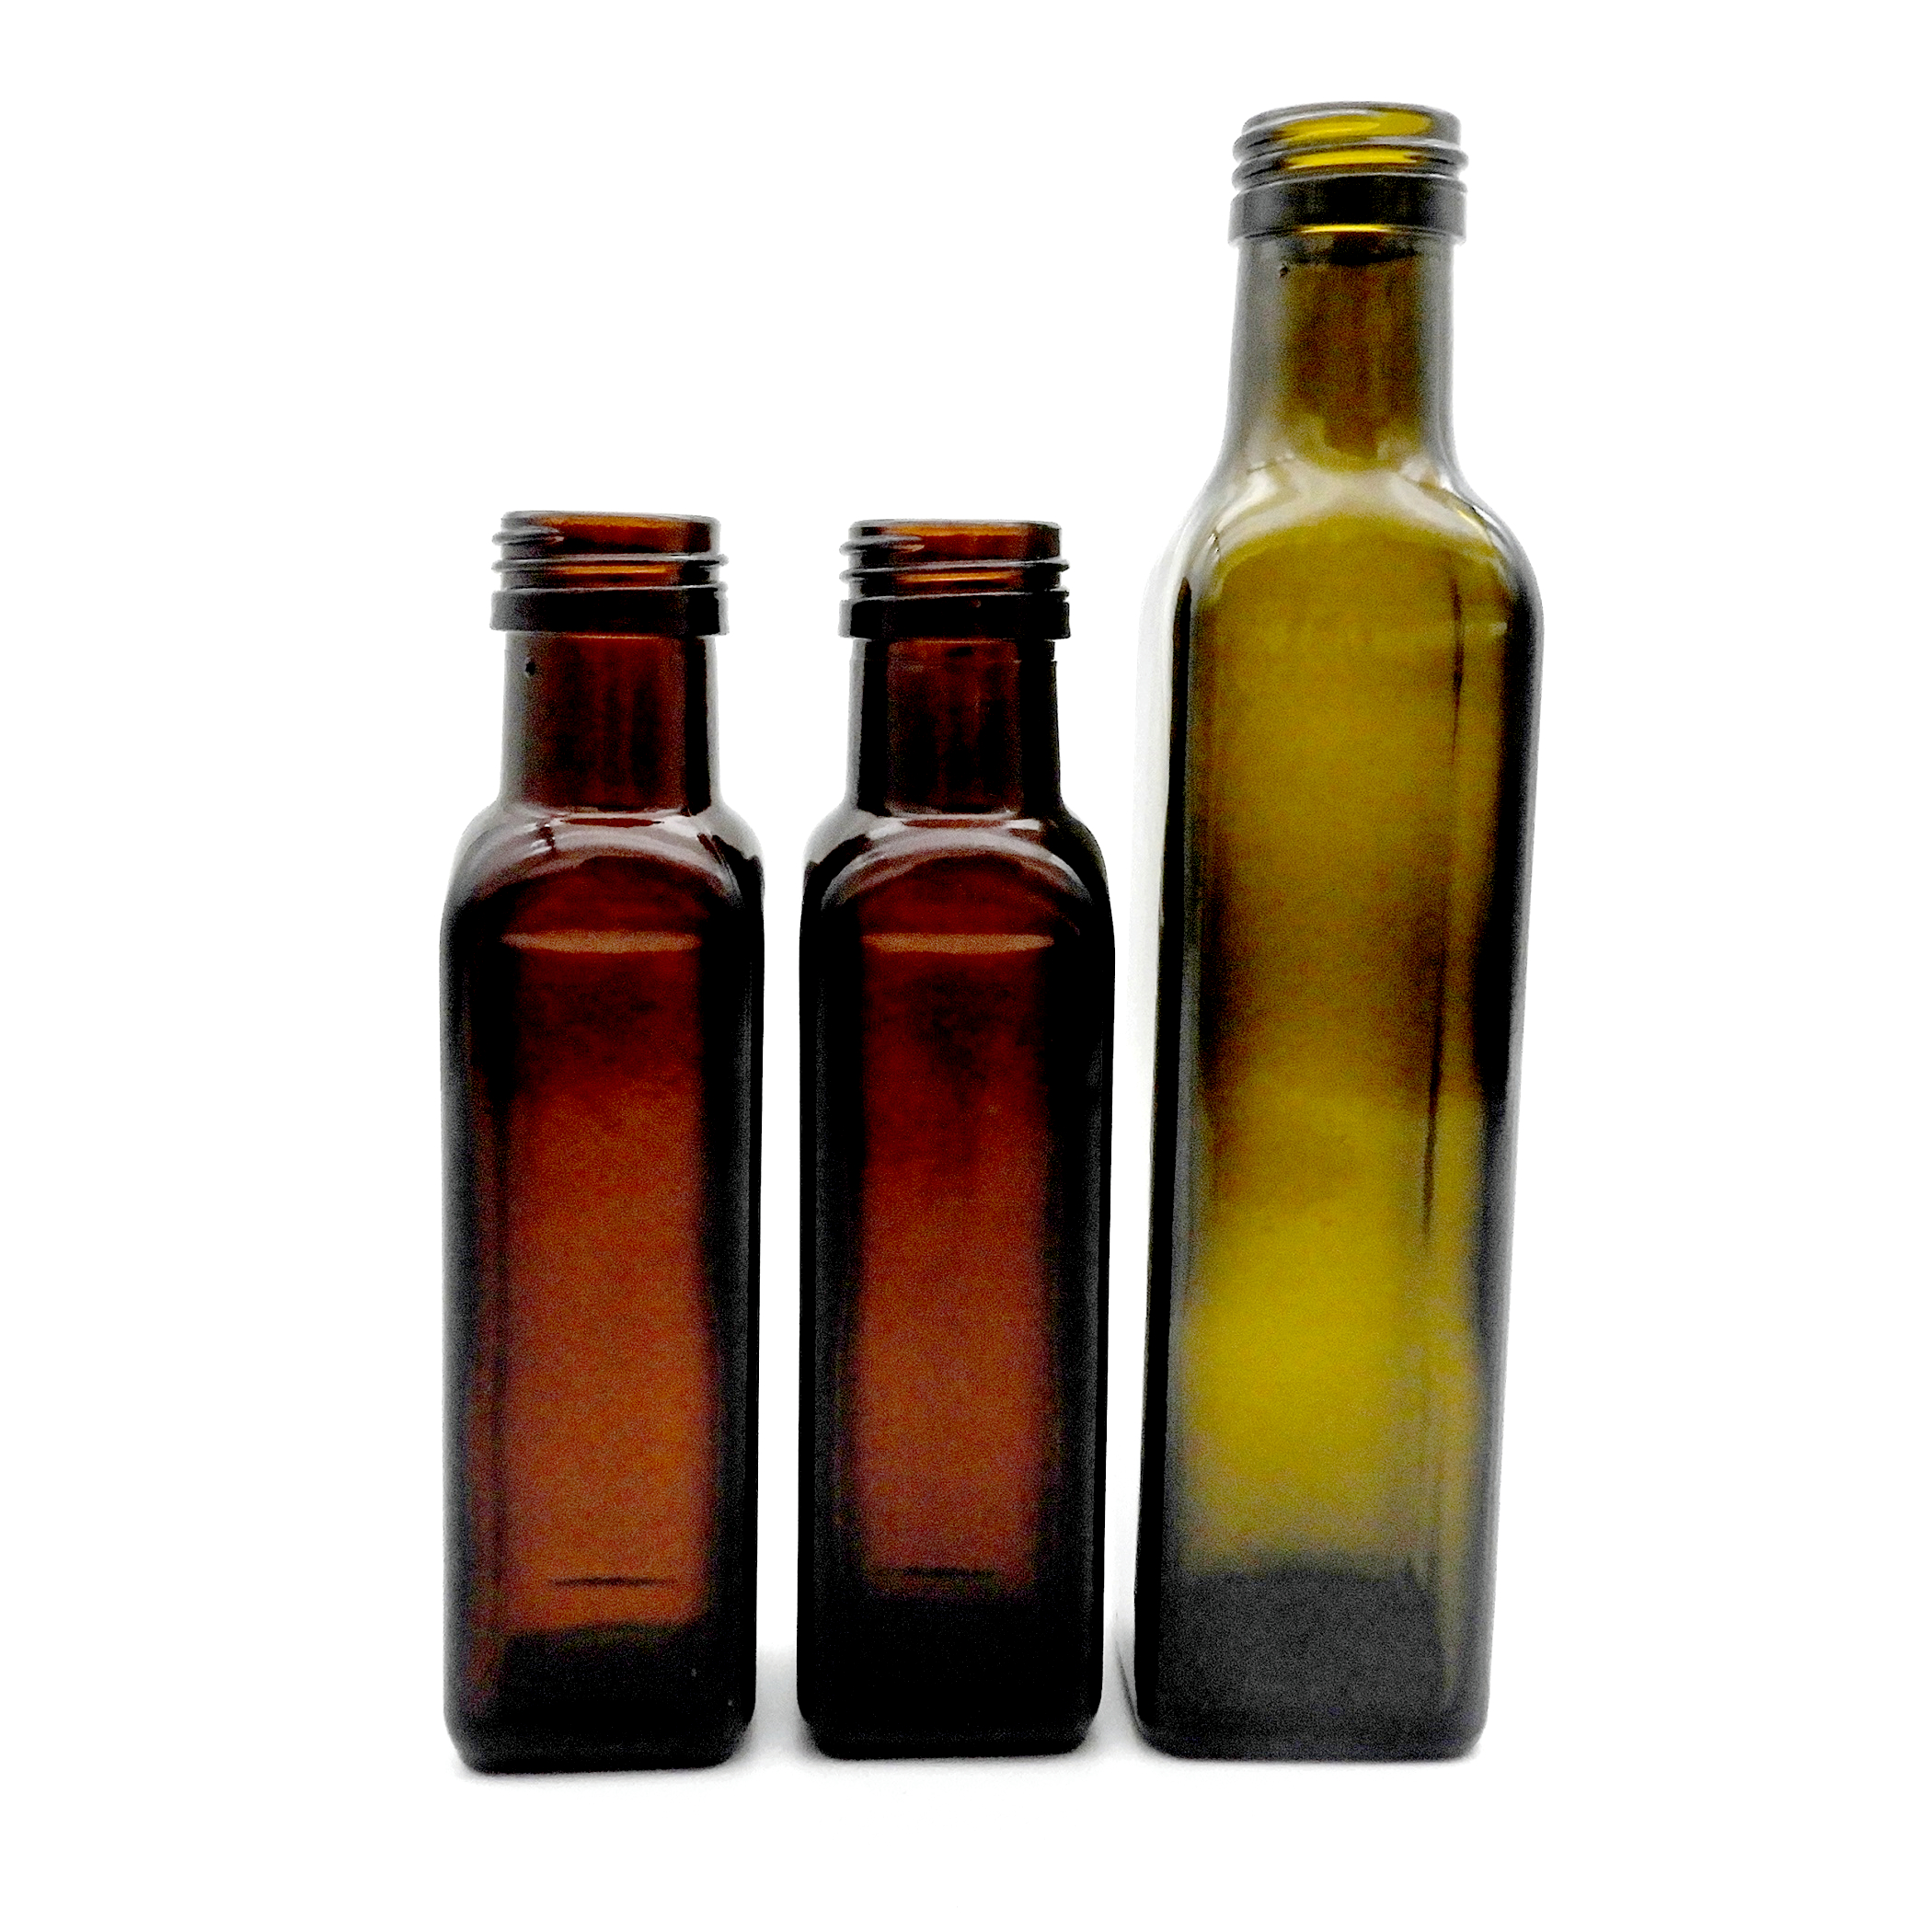 100 मिलीलीटर स्क्वायर जैतून का तेल की बोतल (4)